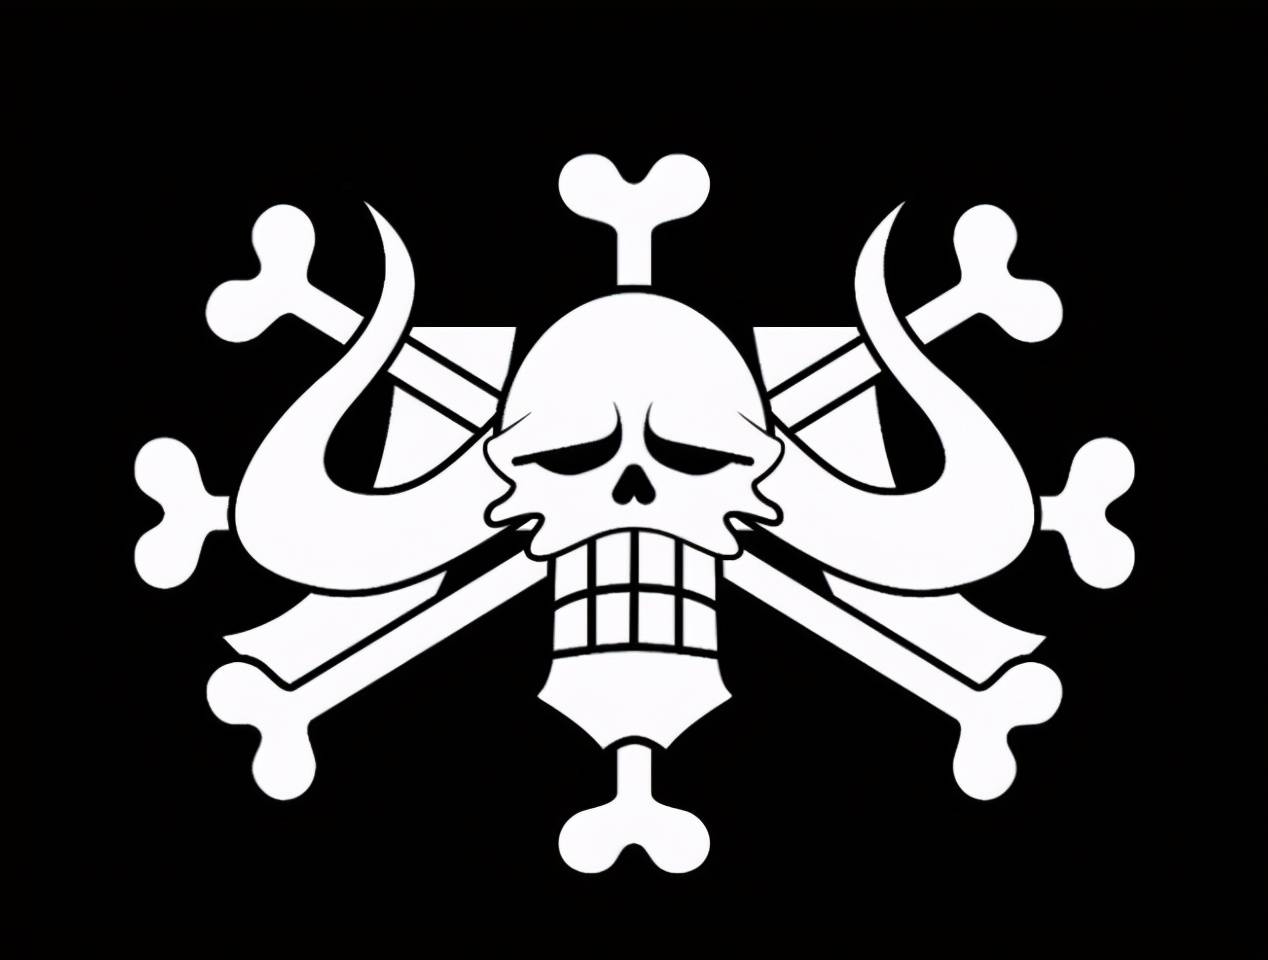 百兽海贼团的旗帜主要是凯多本人的象征.